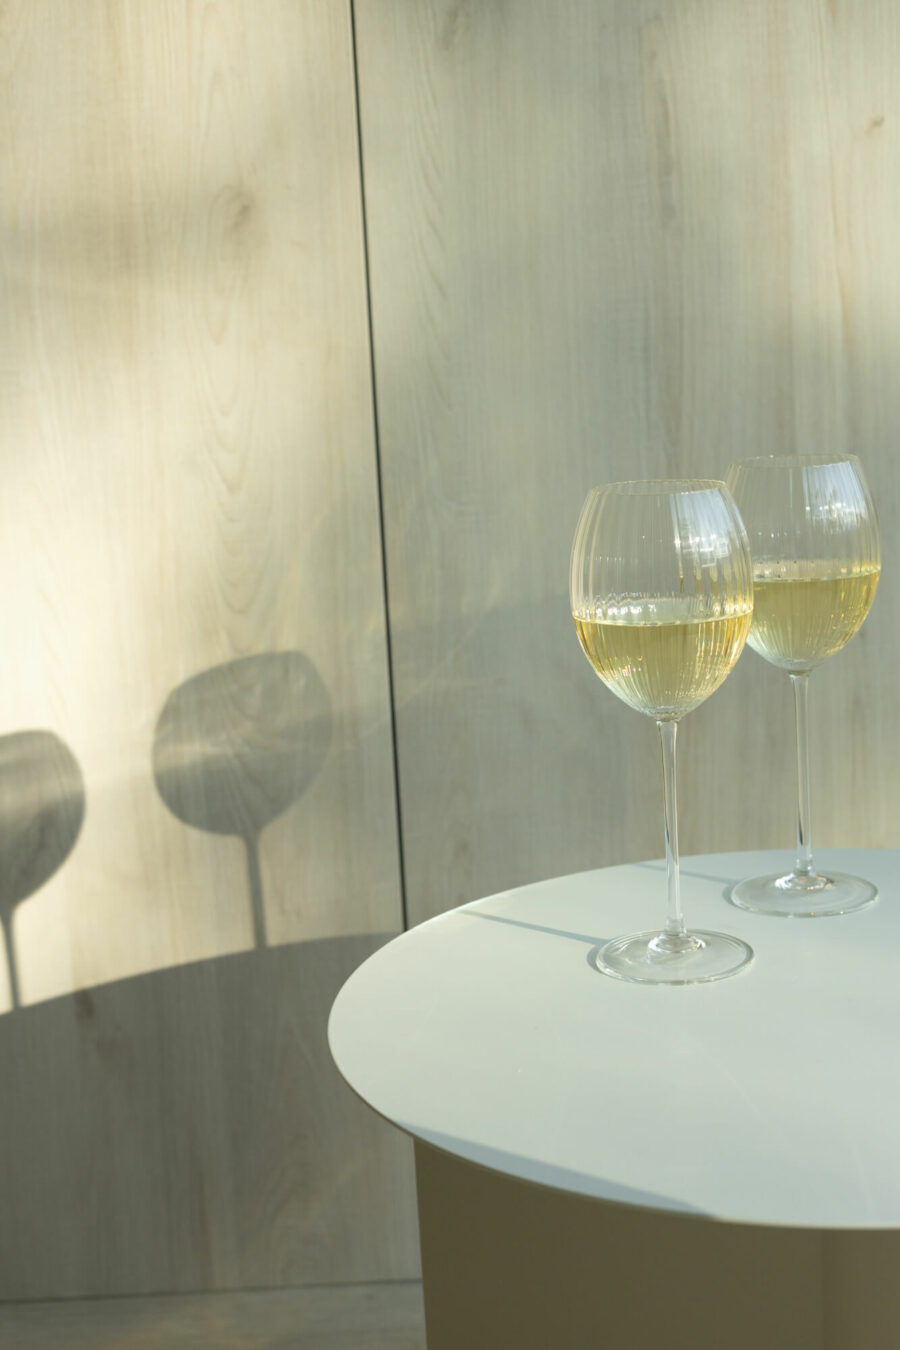 Na okrągłym stole stoją dwa kieliszki do białego wina. Na ścianie widać ich cień.